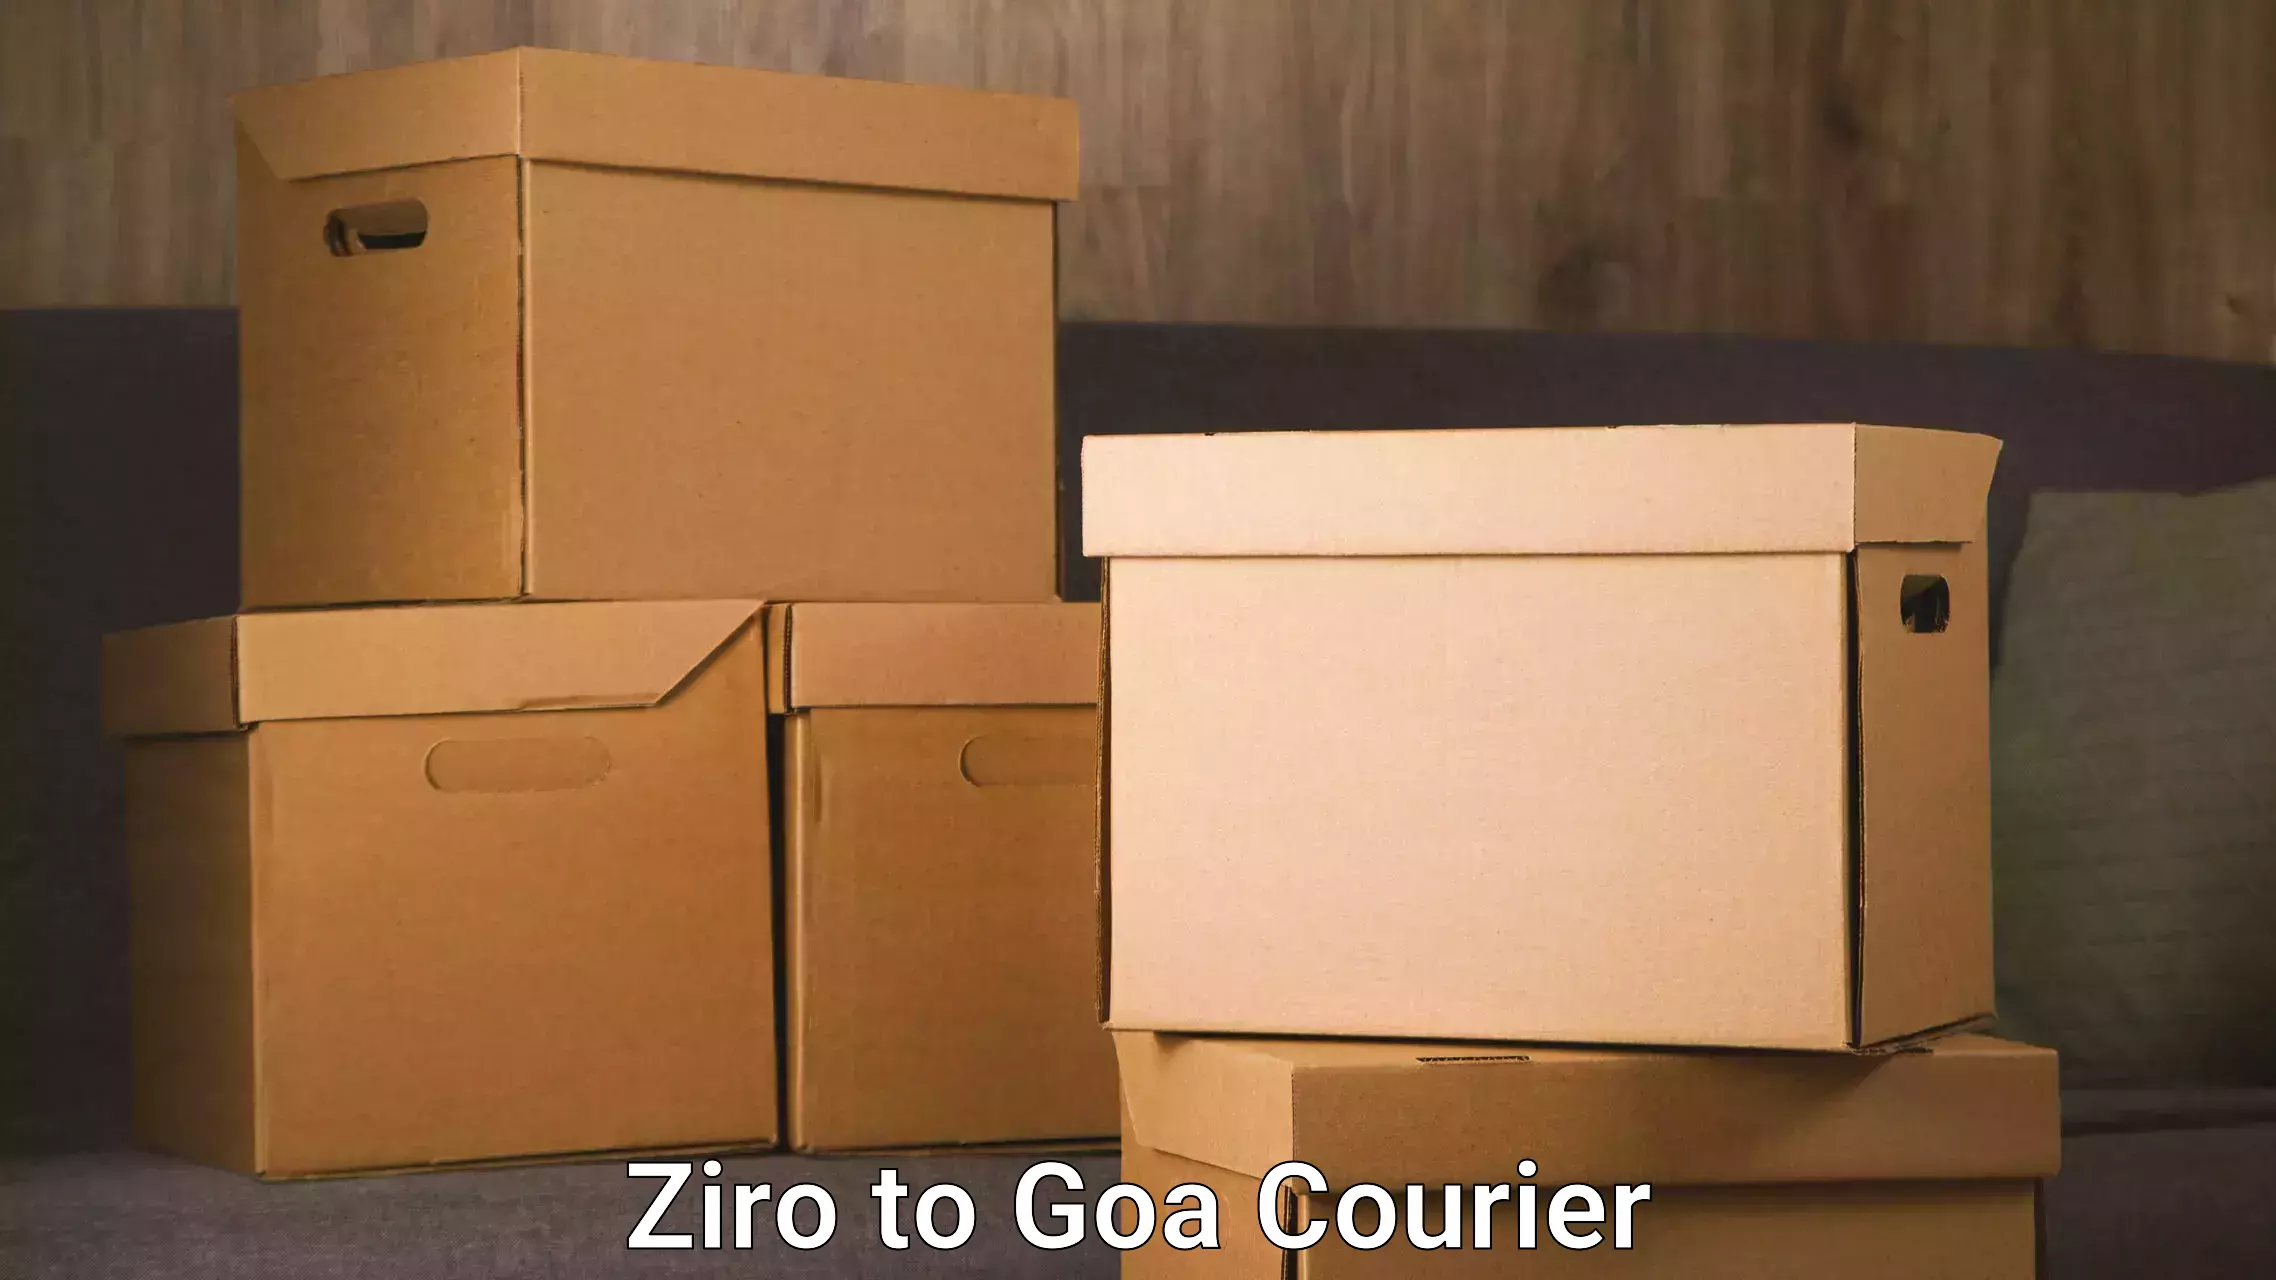 Digital courier platforms Ziro to Vasco da Gama